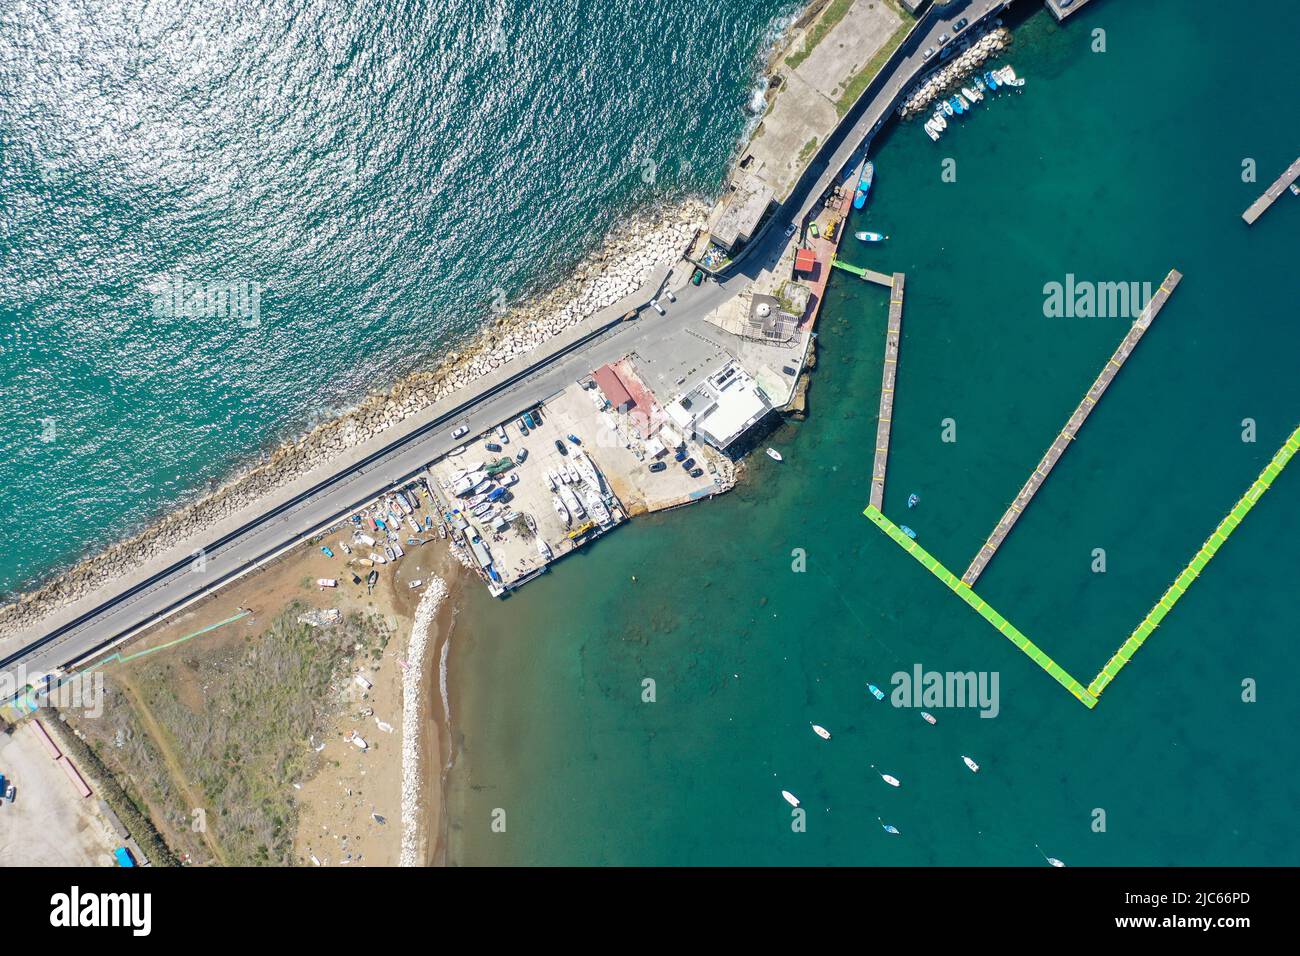 Porto di Nisida, vista aerea Stock Photo